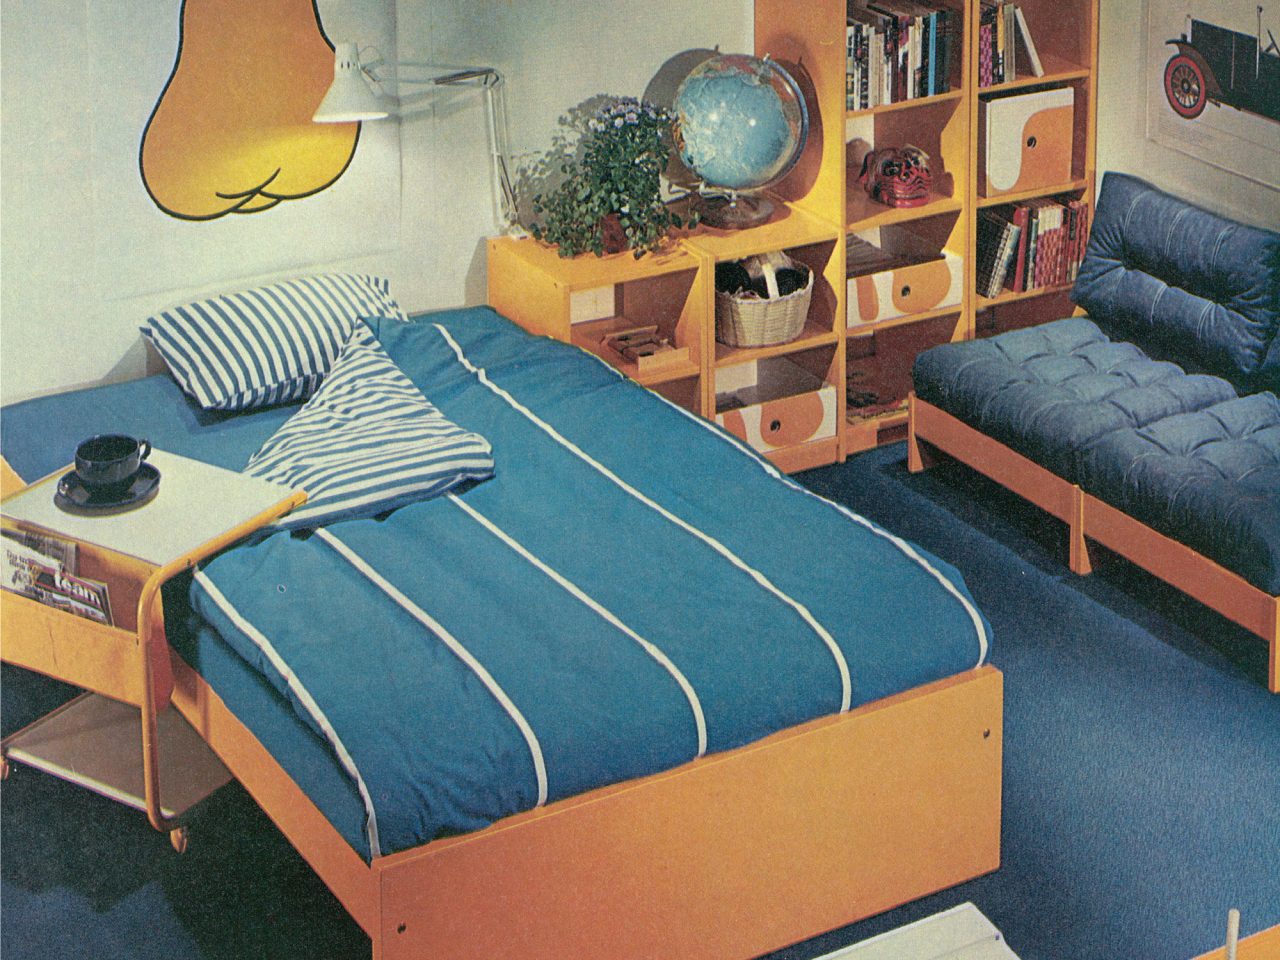 Bild ur IKEA katalogen 1976, enkel träsäng bäddad med påslakan och örngott POLKA, vita ränder på blå botten.